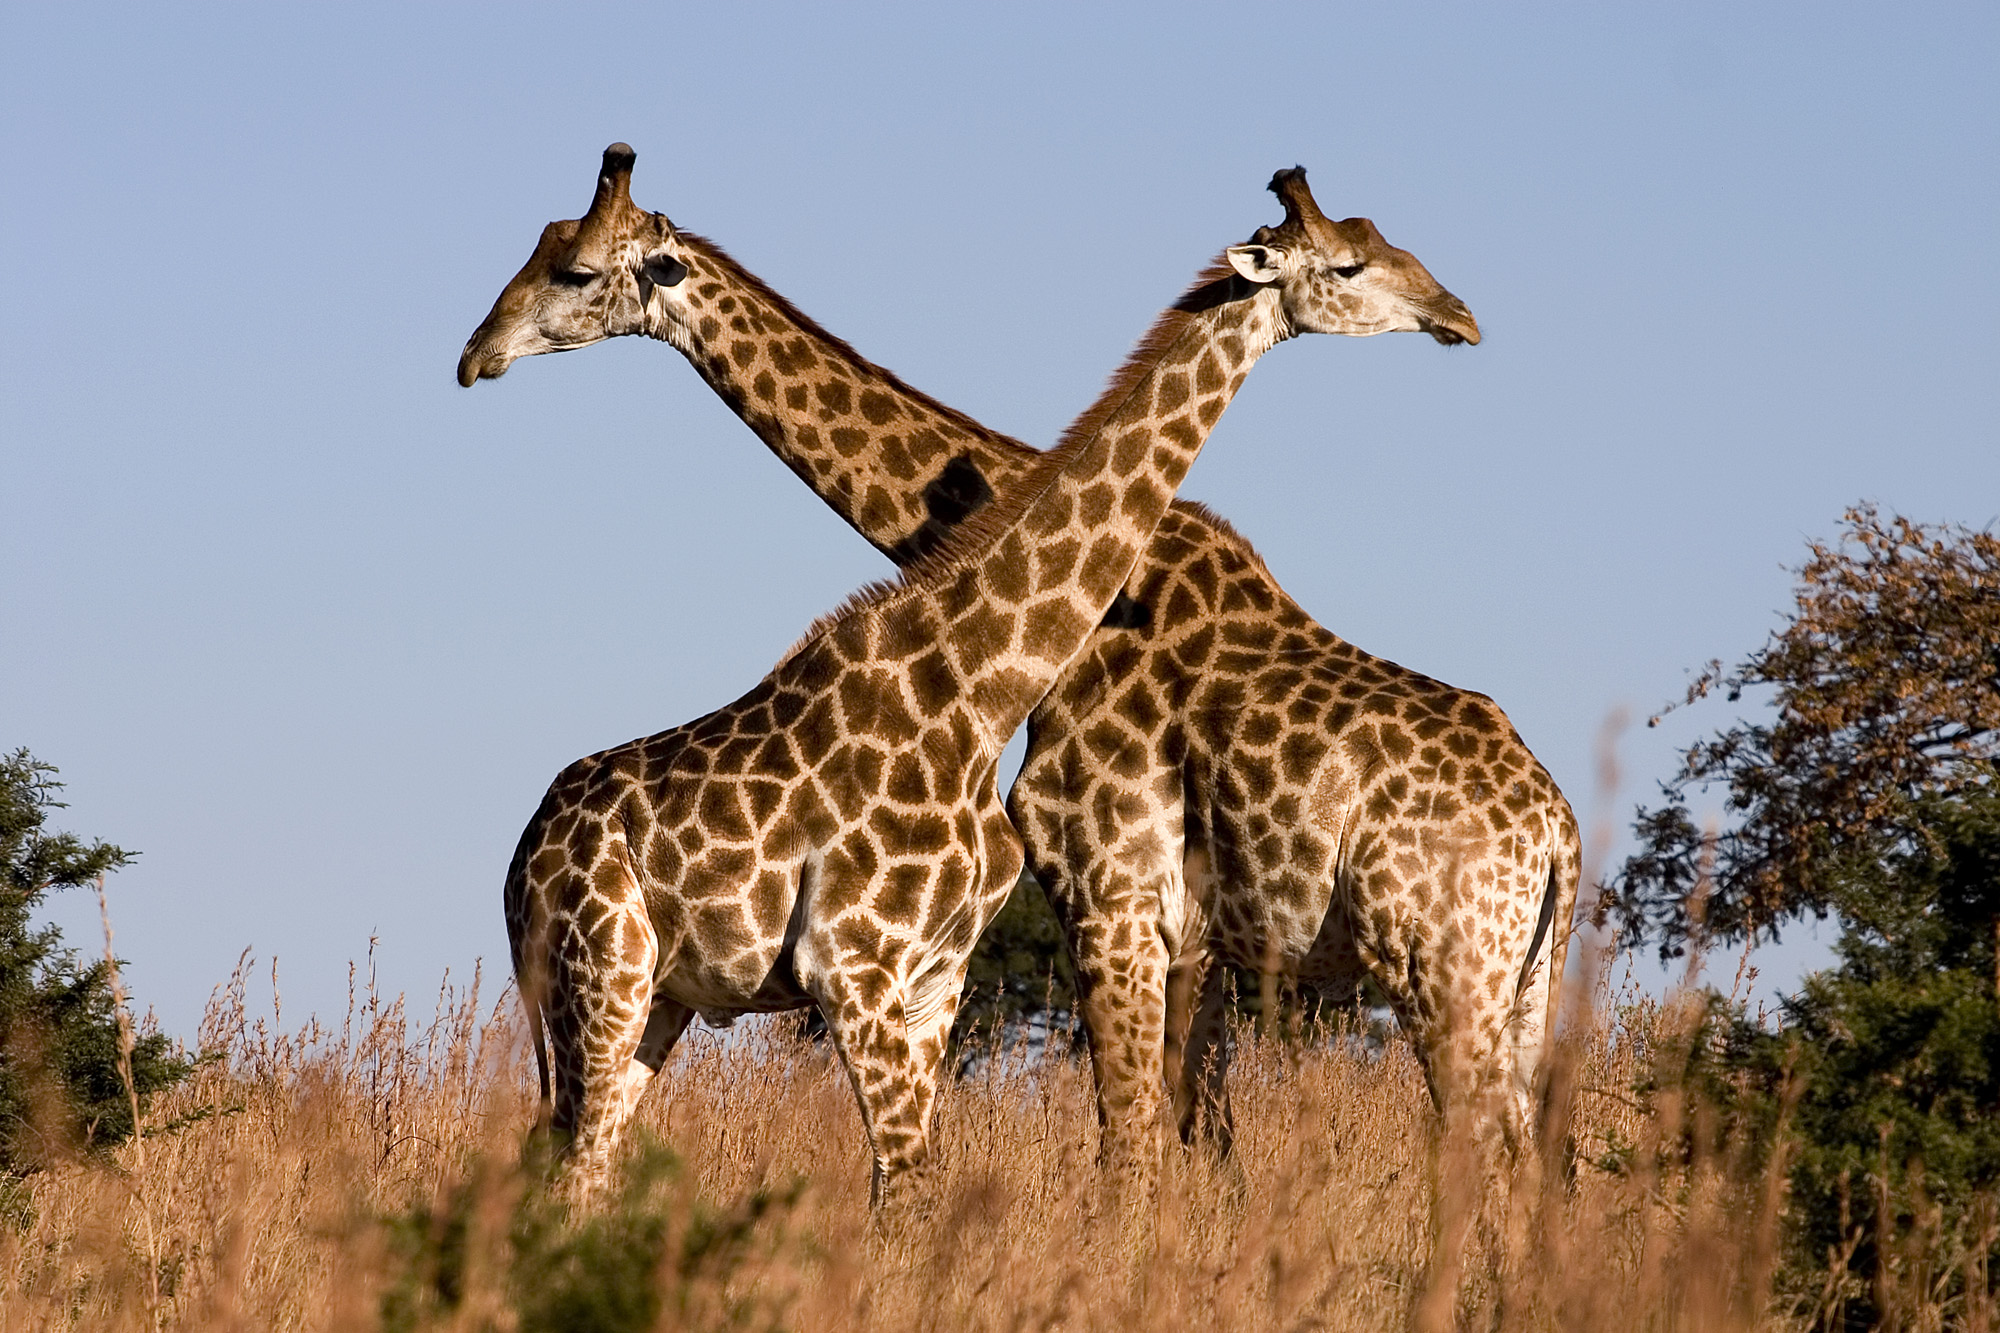 So When Is a Giraffe a Giraffe? - Planet Experts